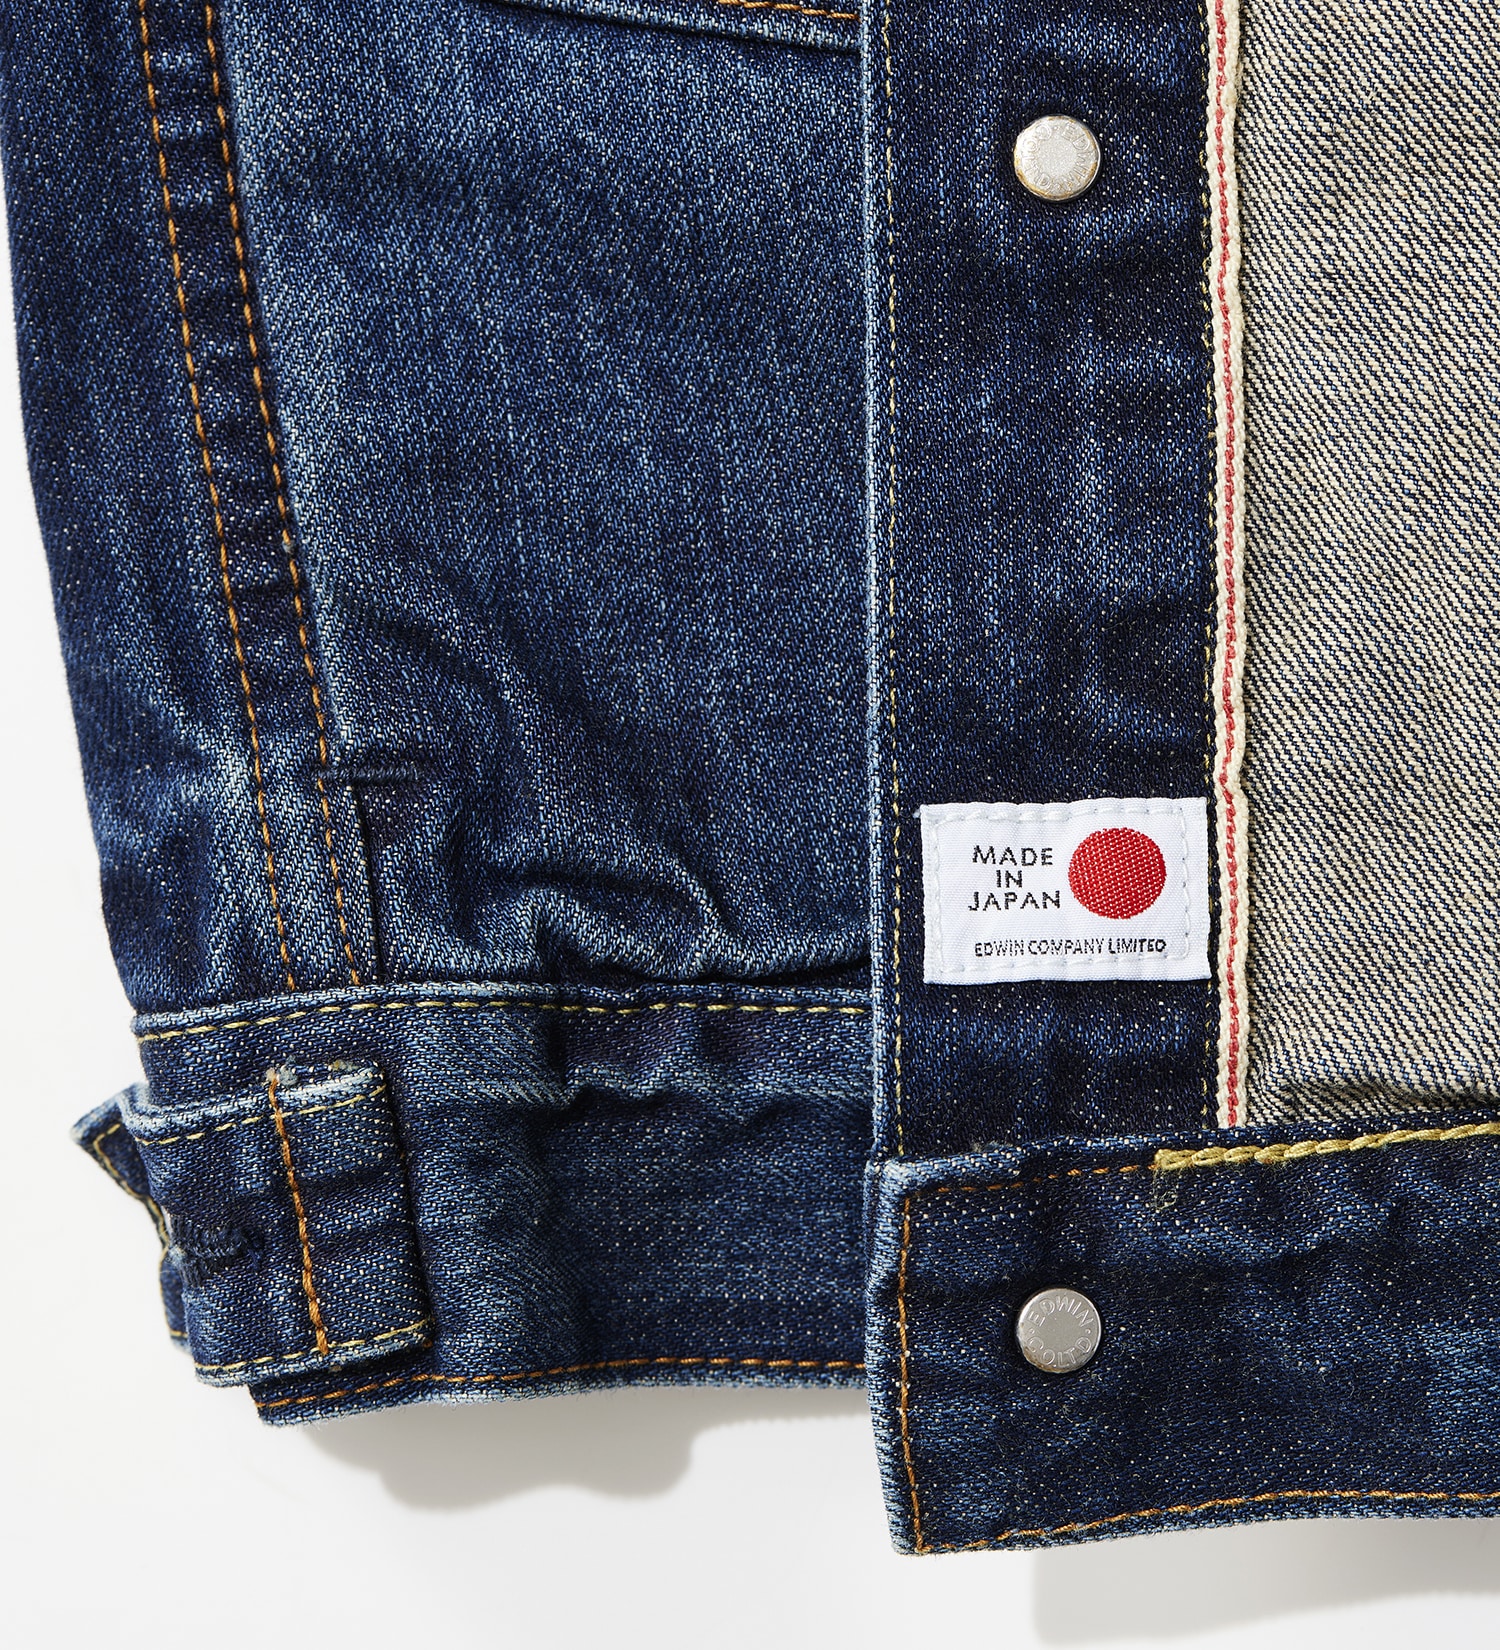 【試着対象】505ZX デニム ジャケット 50s DENIM JACKET セットアップ対応 MADE IN JAPAN 日本製